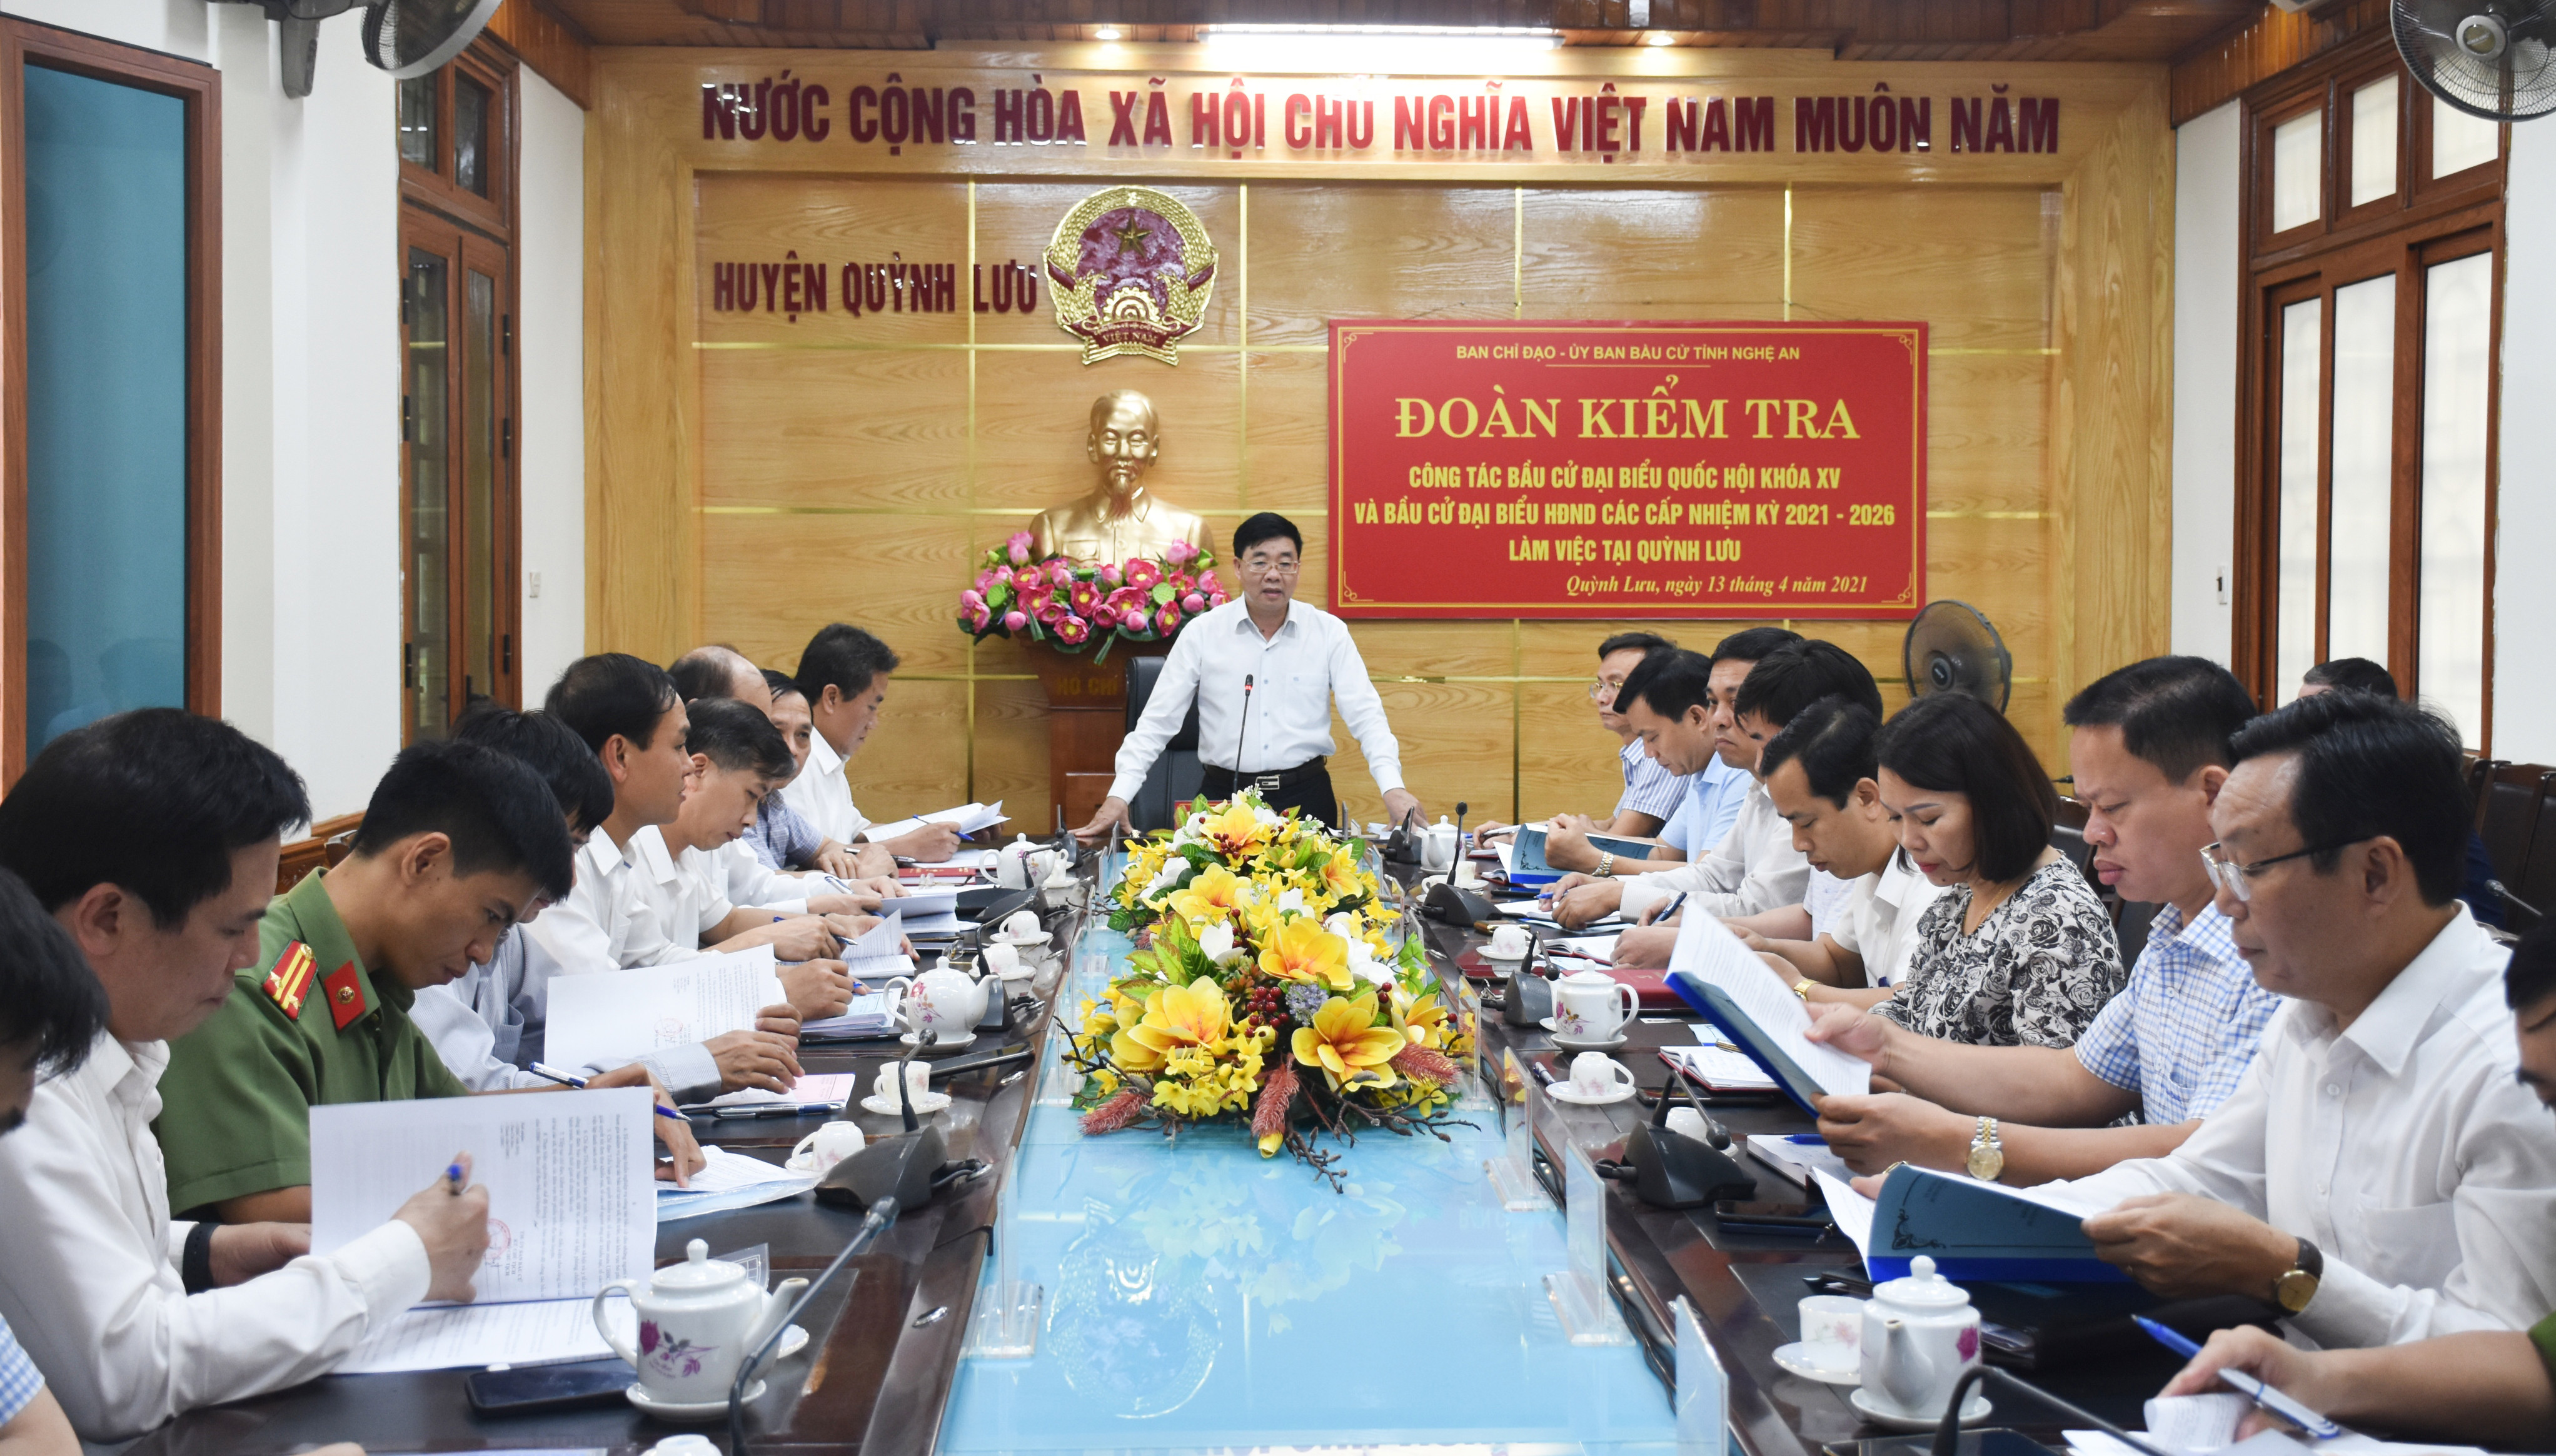 Đoàn kiểm tra làm việc với Ủy ban bầu cử huyện Quỳnh Lưu. Ảnh: Thanh Lê